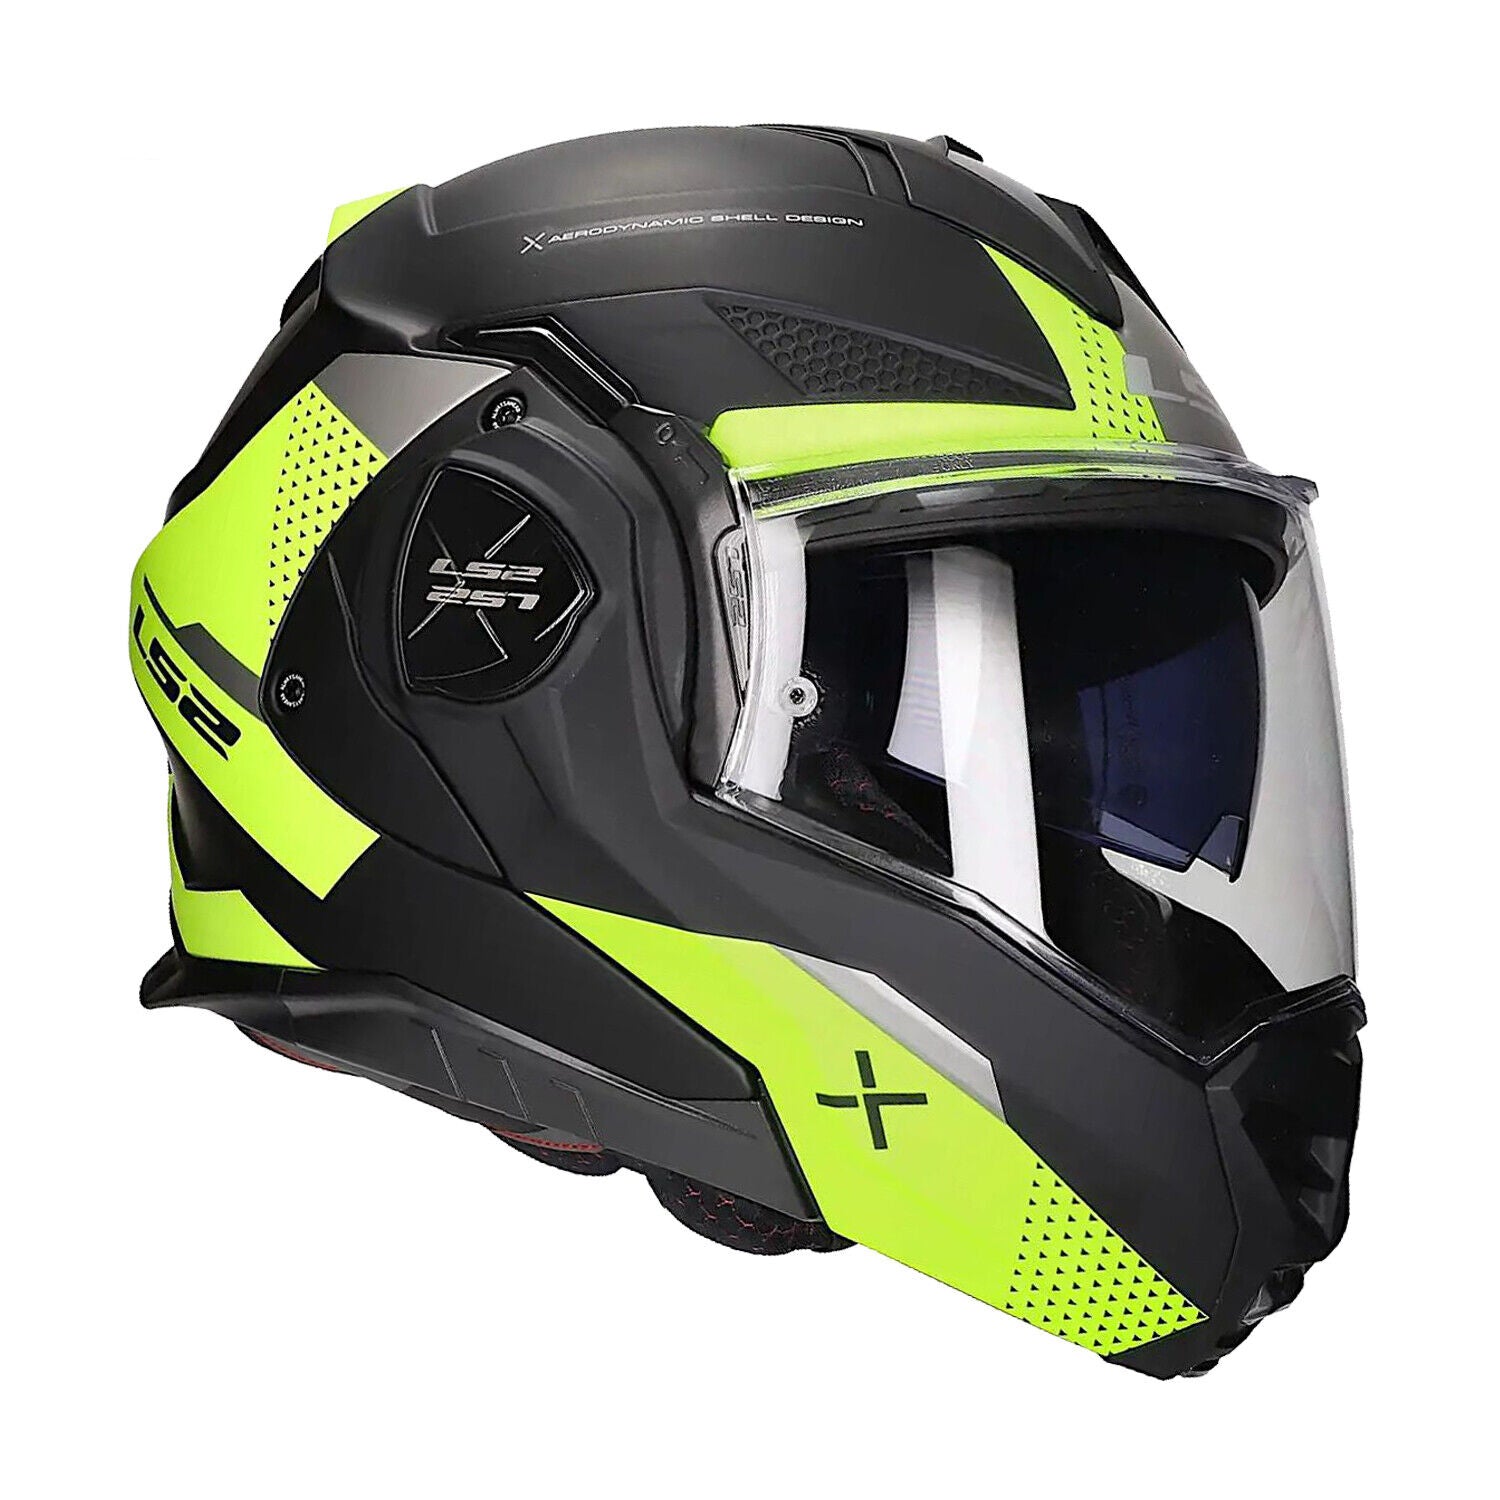 Riderwear | LS2 FF901 ADVANT X OBLIVION Flip-Up Helmet - Hi-Viz Matt Black